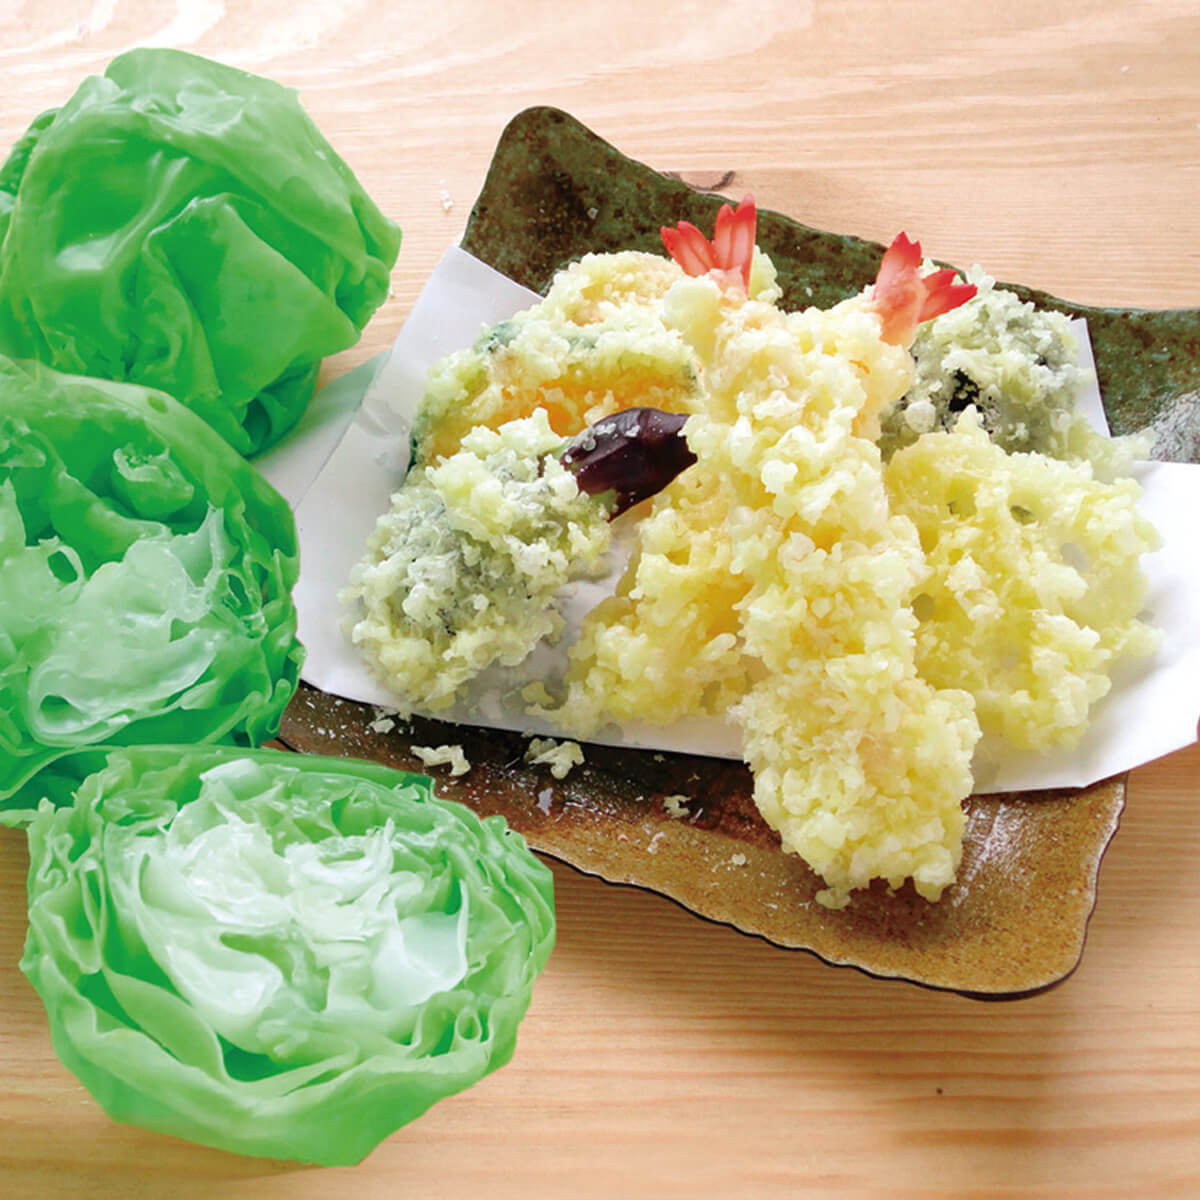 食品サンプル製作体験 天ぷらとレタス